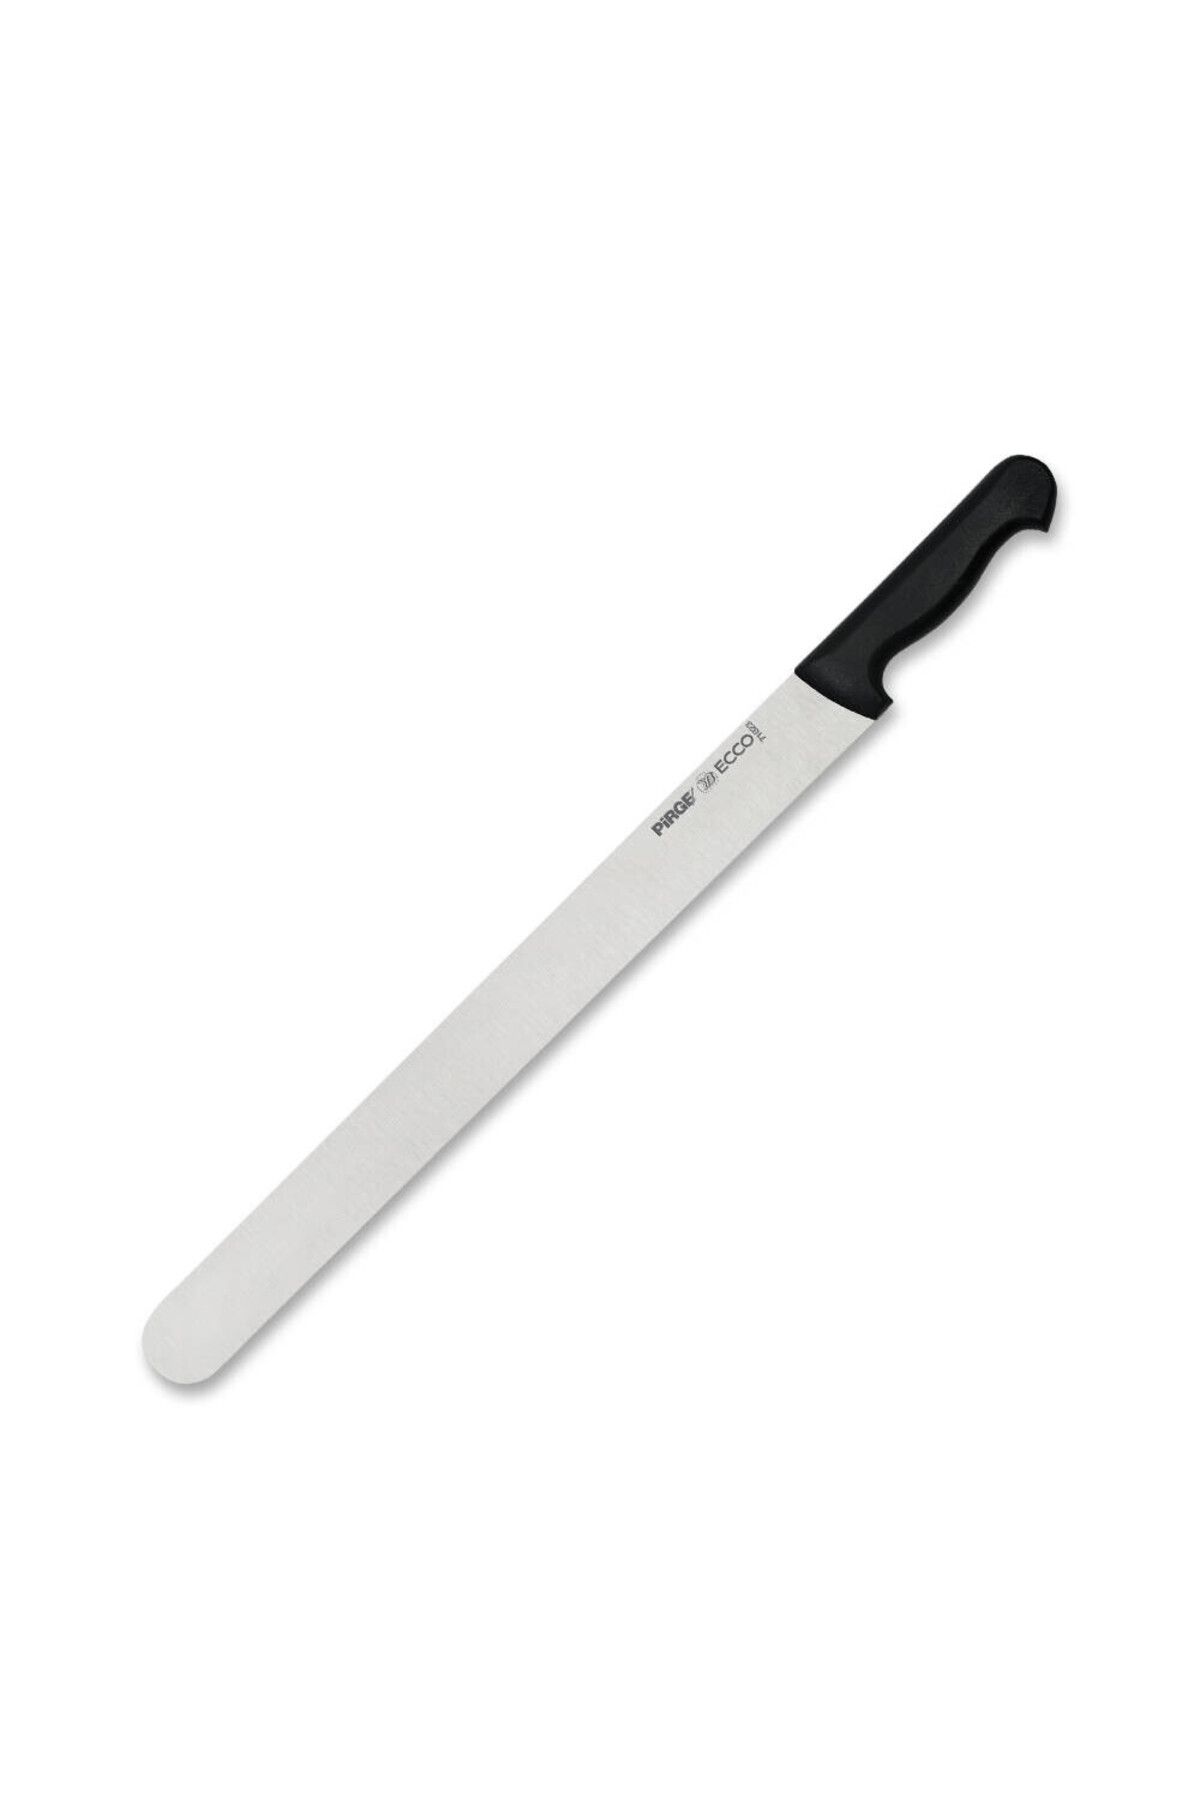 Pirge Ecco Yaprak Döner Bıçağı 50cm - 71023